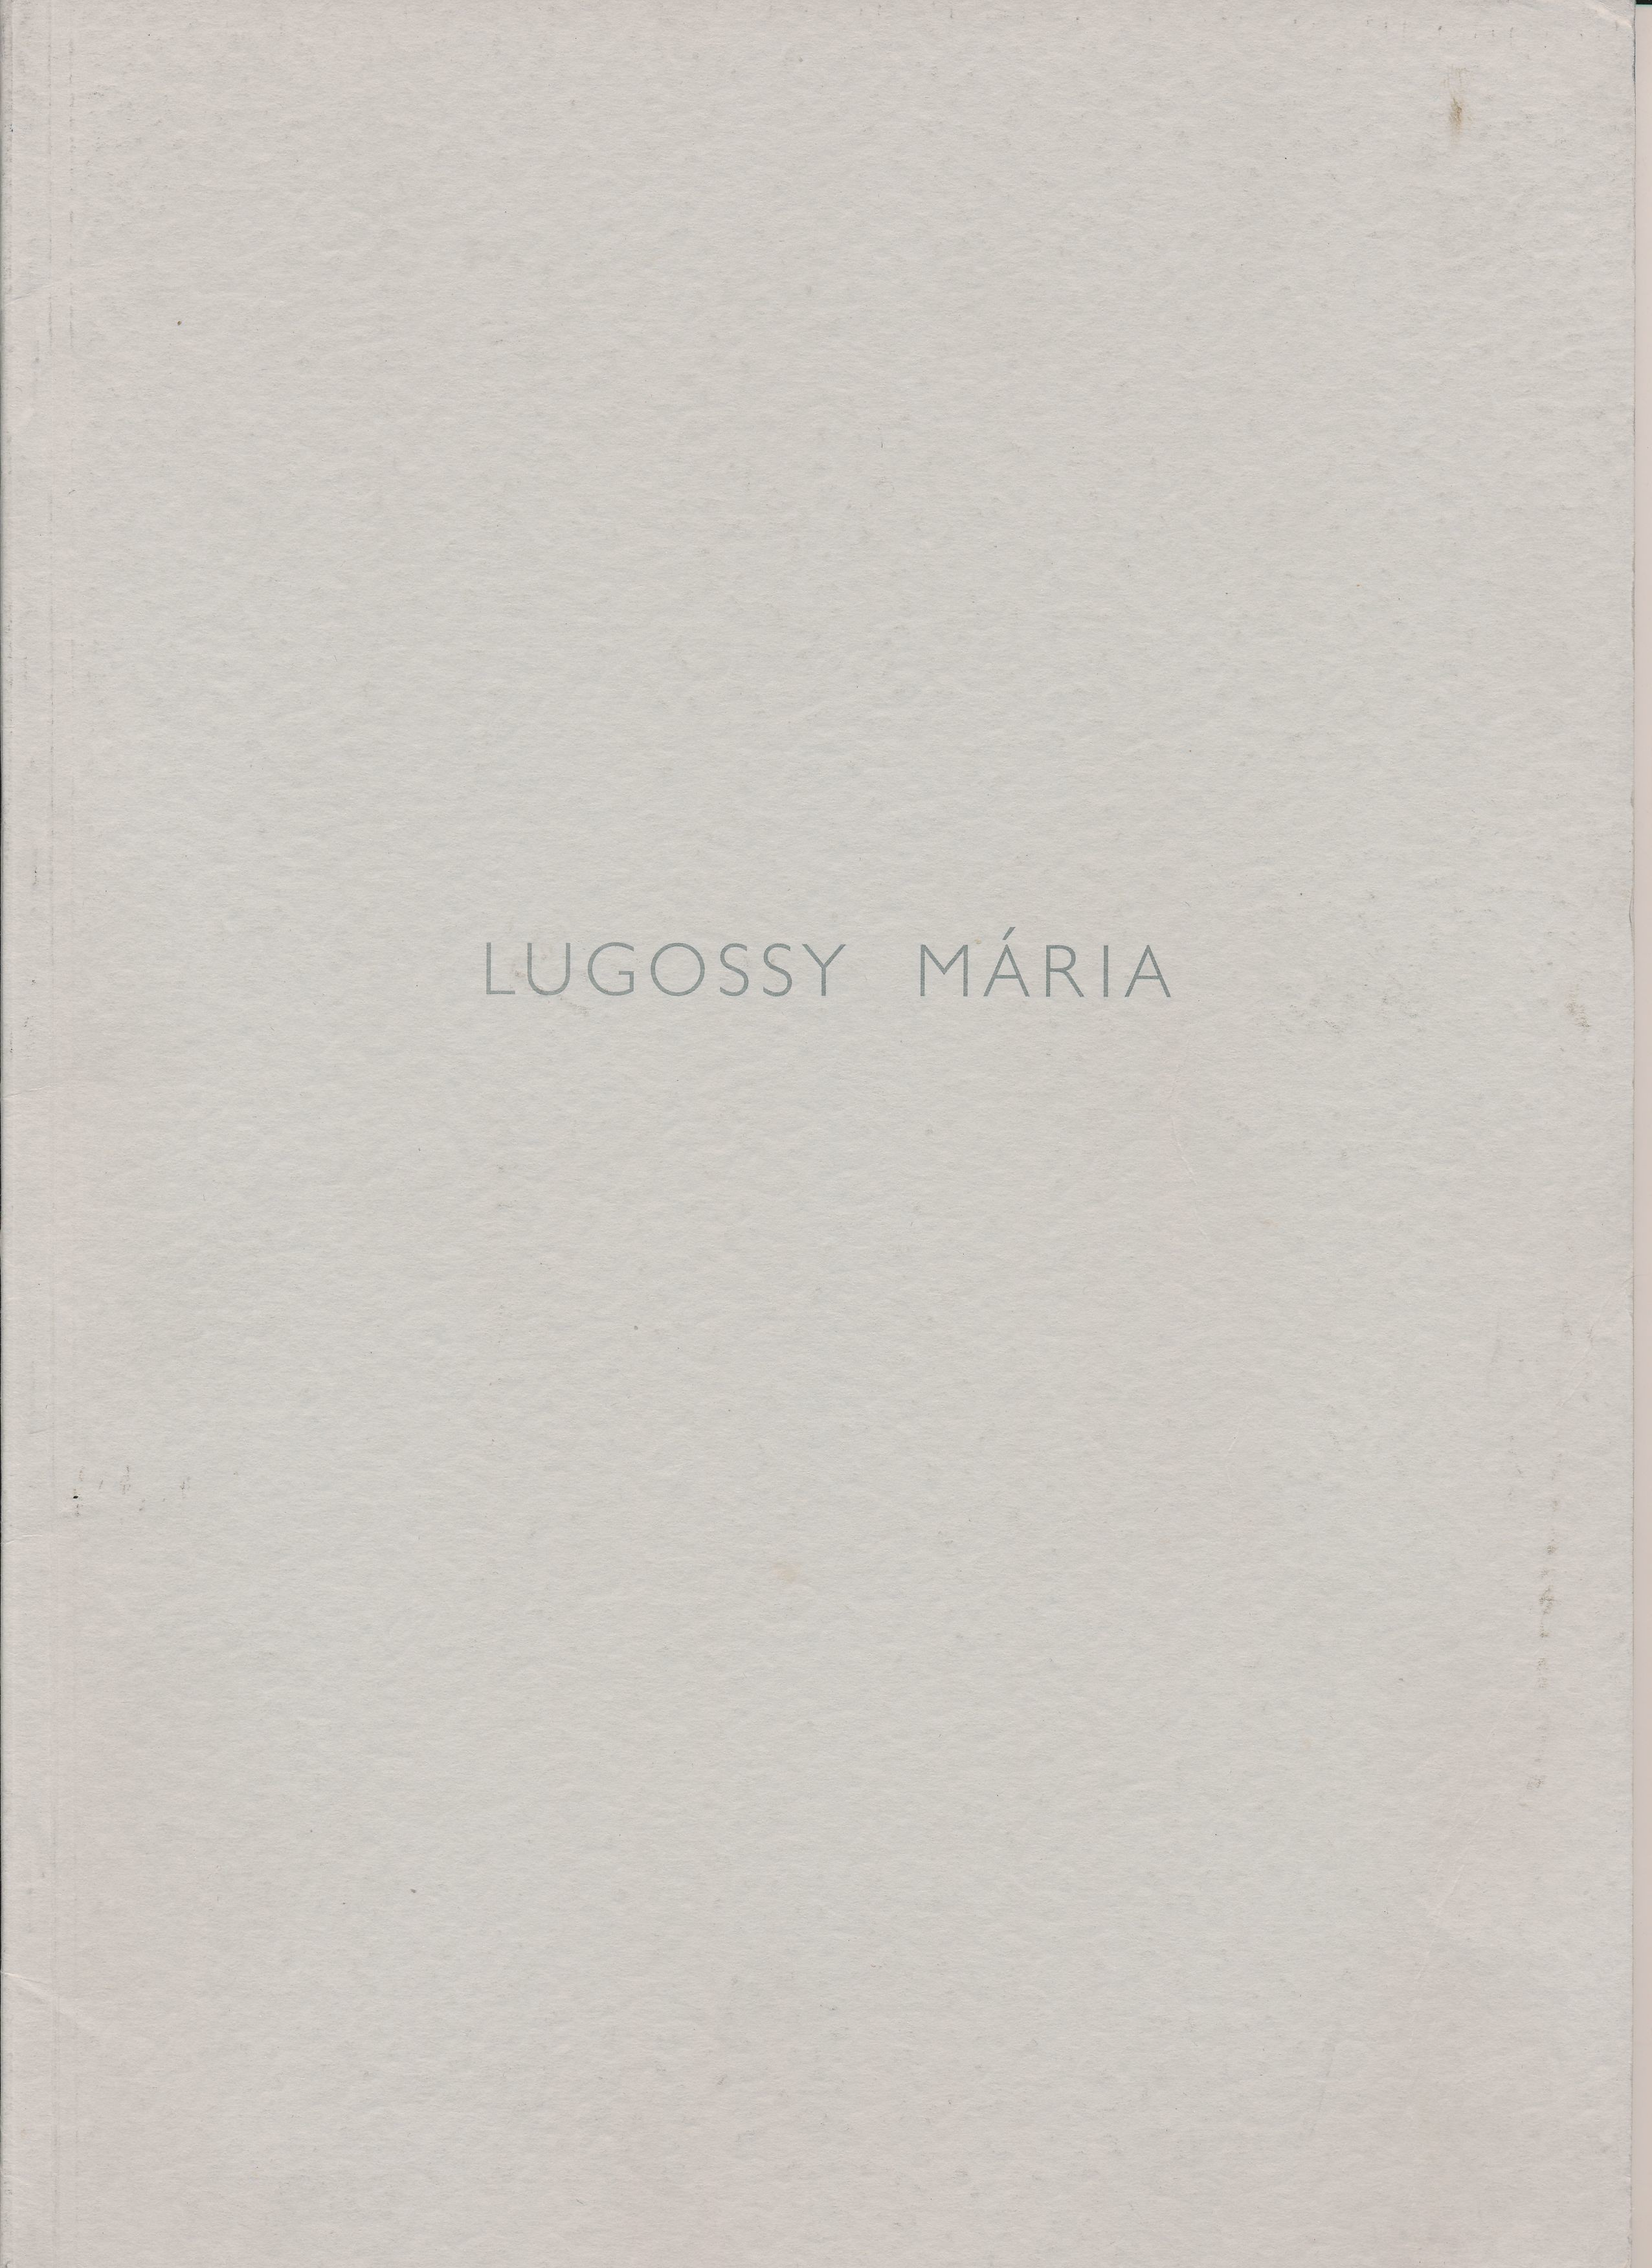 Lugossy Mária szobrászművész akadémiai székfoglaló kiállítása Fővárosi Képtár Kiscelli Múzeum 1995 (Design DigiTár – Iparművészeti archívum CC BY-NC-SA)